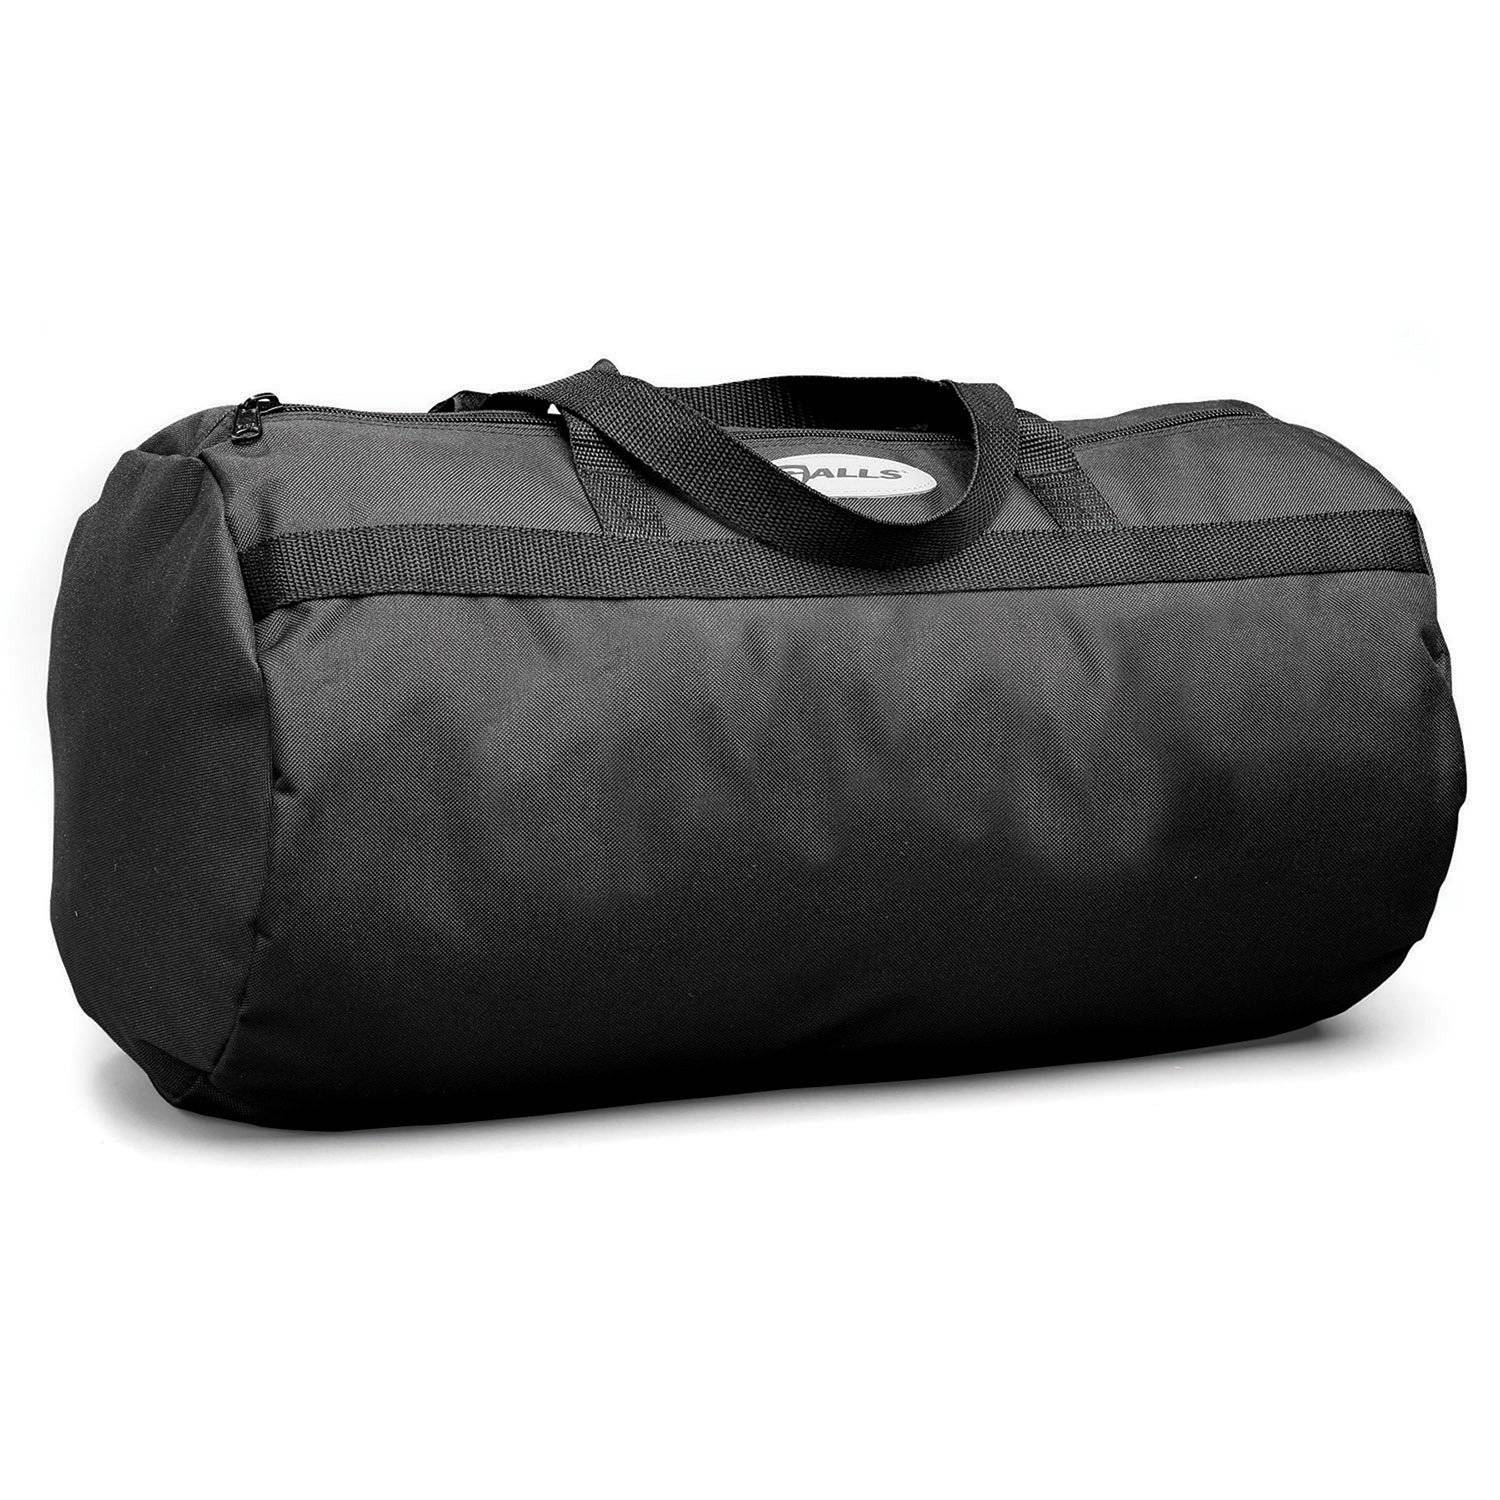 Galls Deluxe Barrel Bag